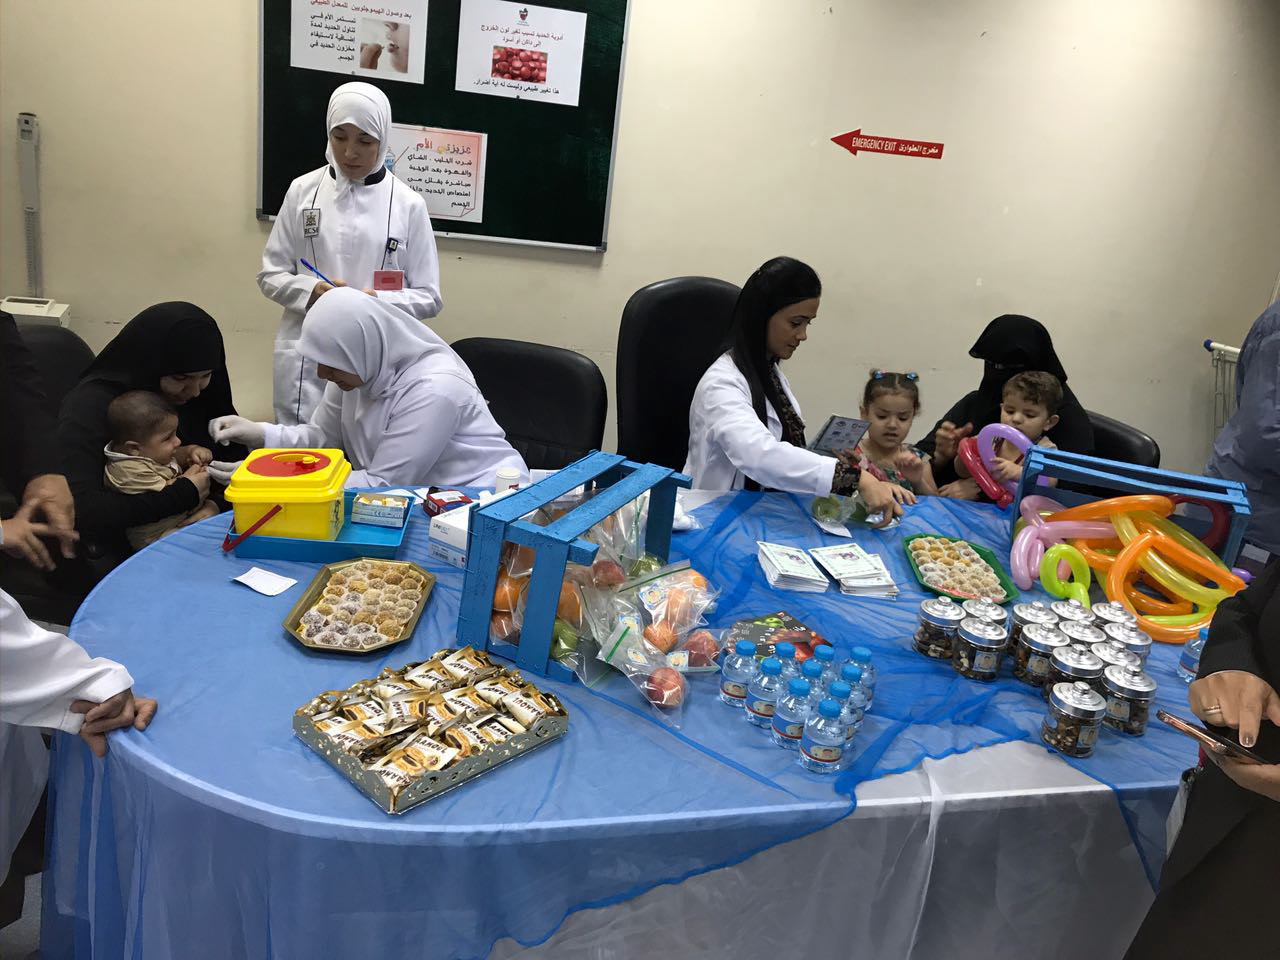  مركز مدينة حمد الصحي ينظم فعالية - طفلك وفقر الدم الحديدي